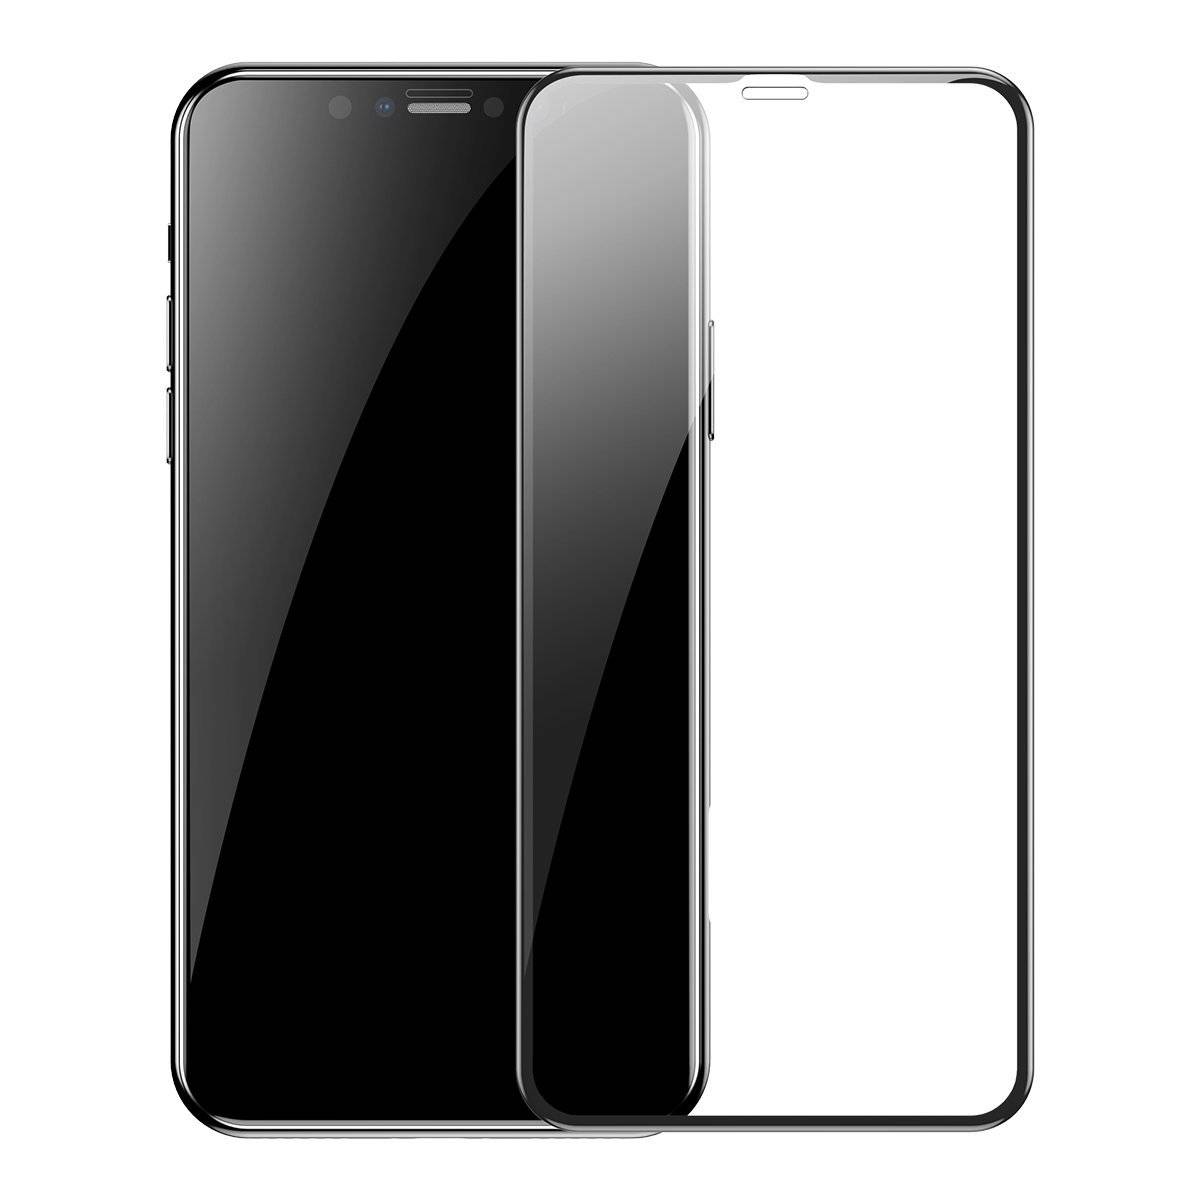 Set 2 folii de sticla pentru protectie ecran, Apple iPhone XR / 11, Baseus Tempered Glass, 6.1 inch BASEUS imagine noua tecomm.ro